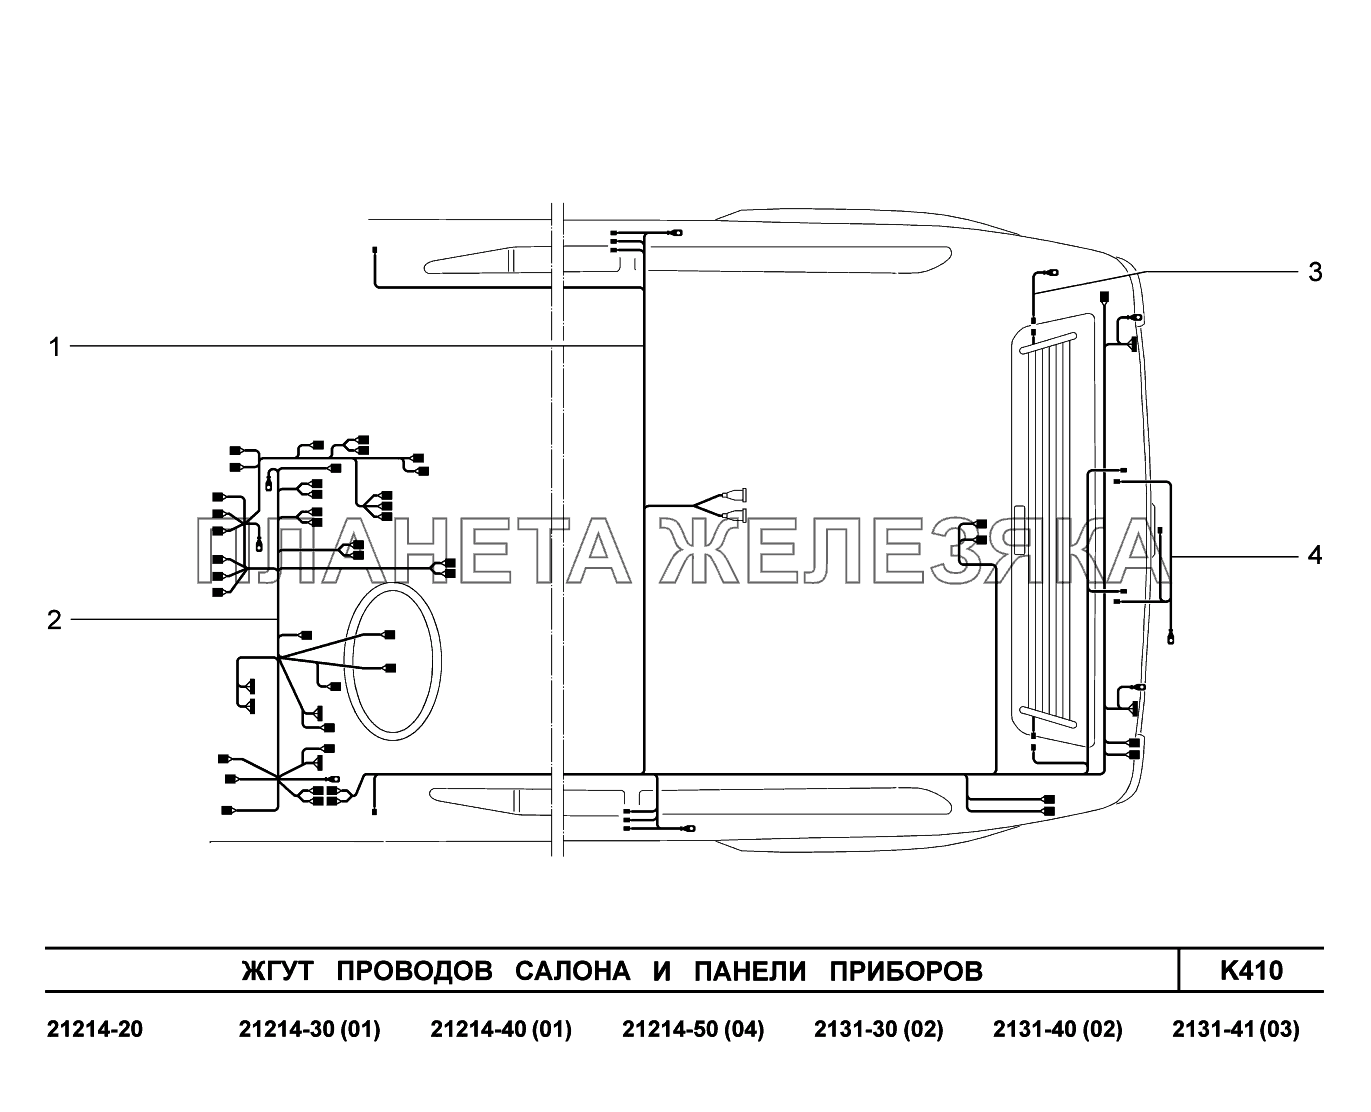 K410. Жгуты проводов салона и панели приборов LADA 4x4